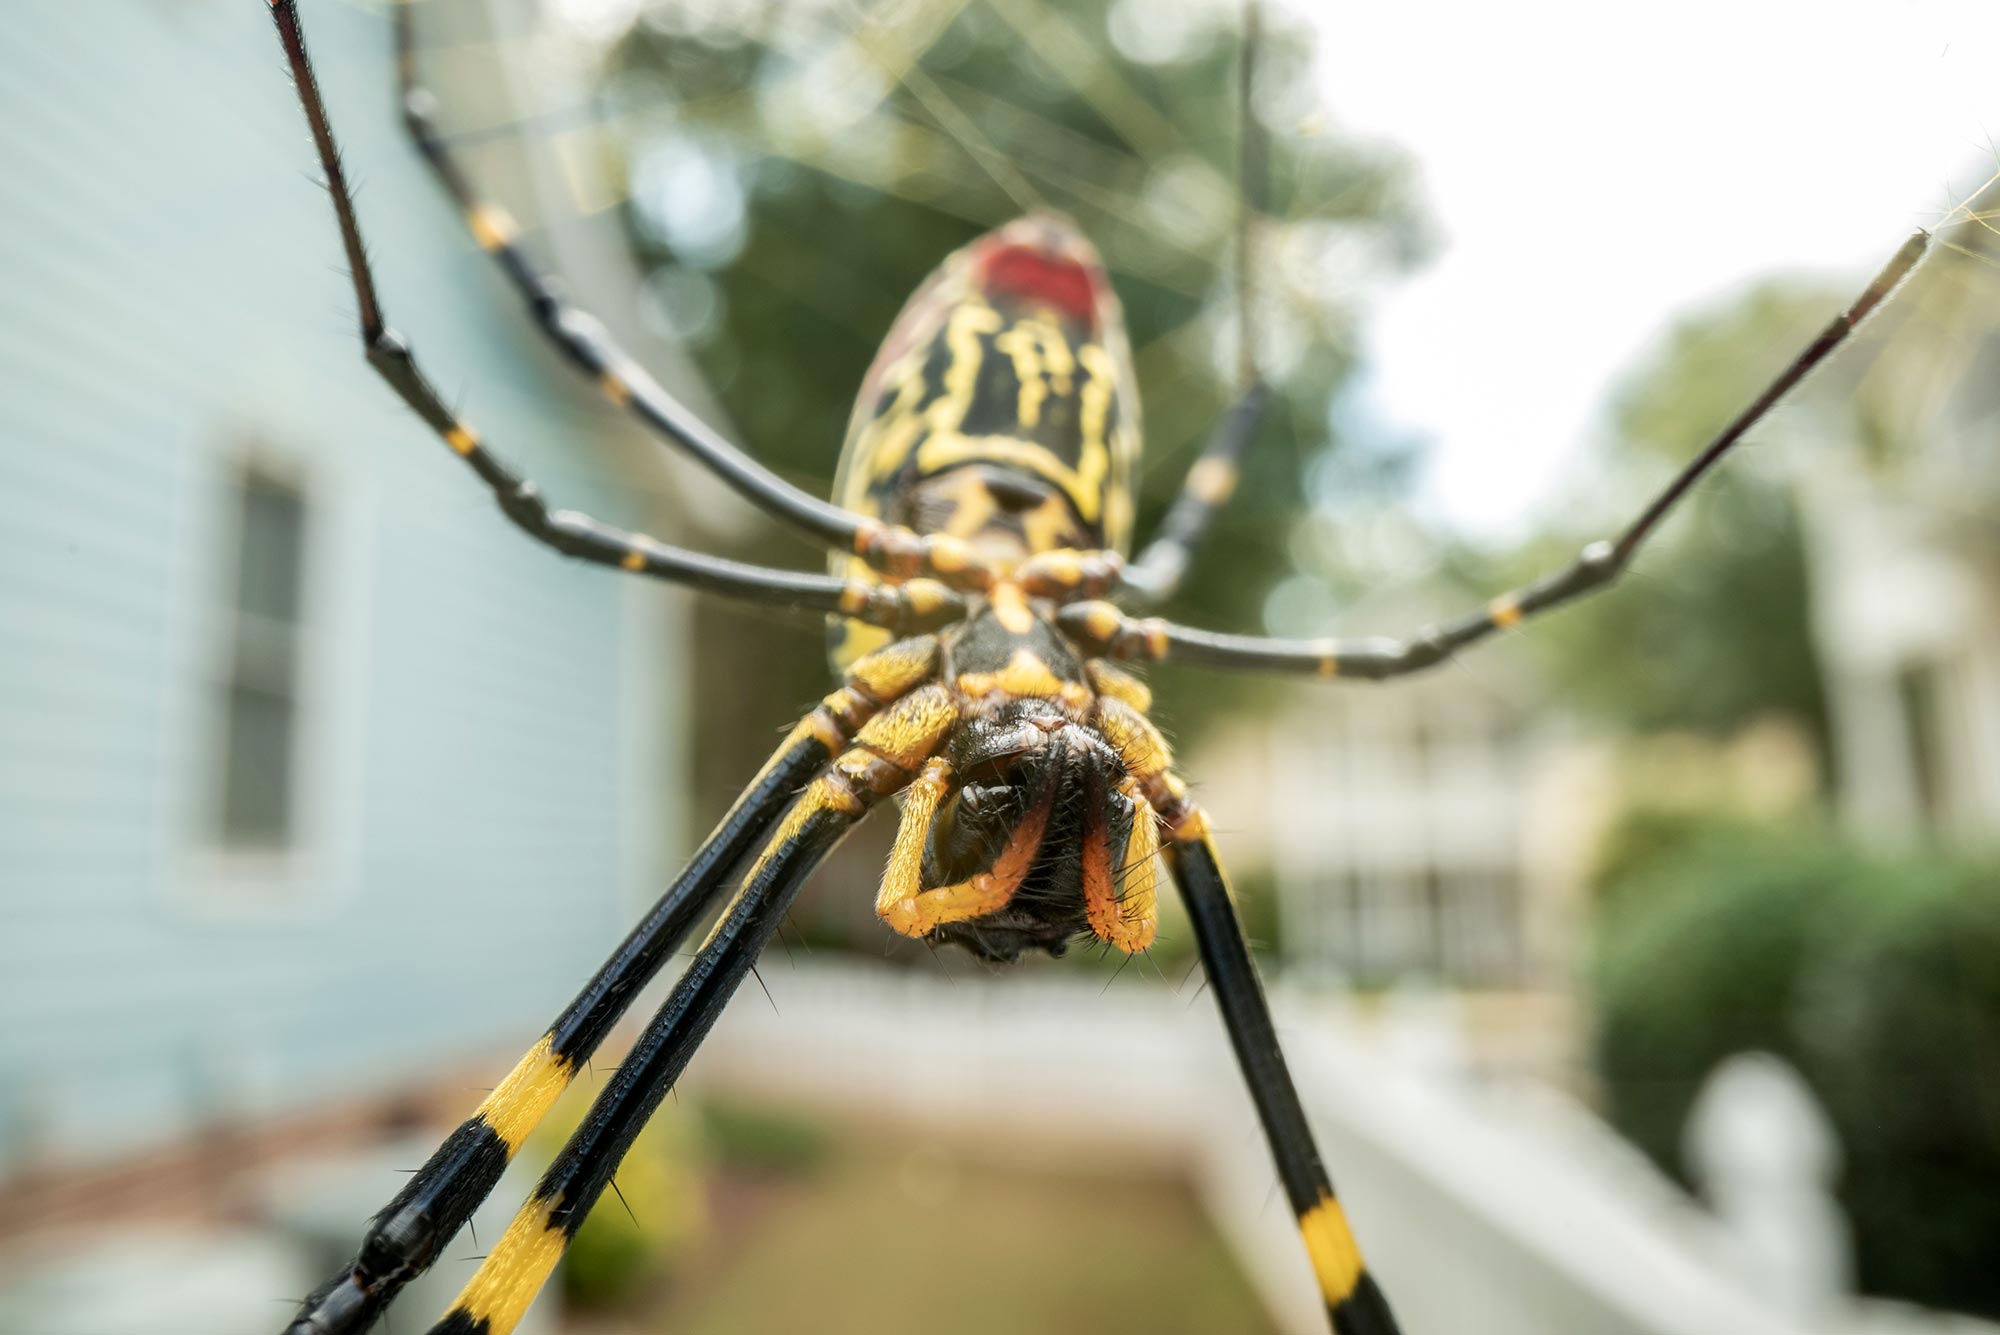 Οι τεράστιες αράχνες που είναι κοινές στις νοτιοανατολικές Ηνωμένες Πολιτείες έχουν ένα εκπληκτικό χαρακτηριστικό επιβίωσης